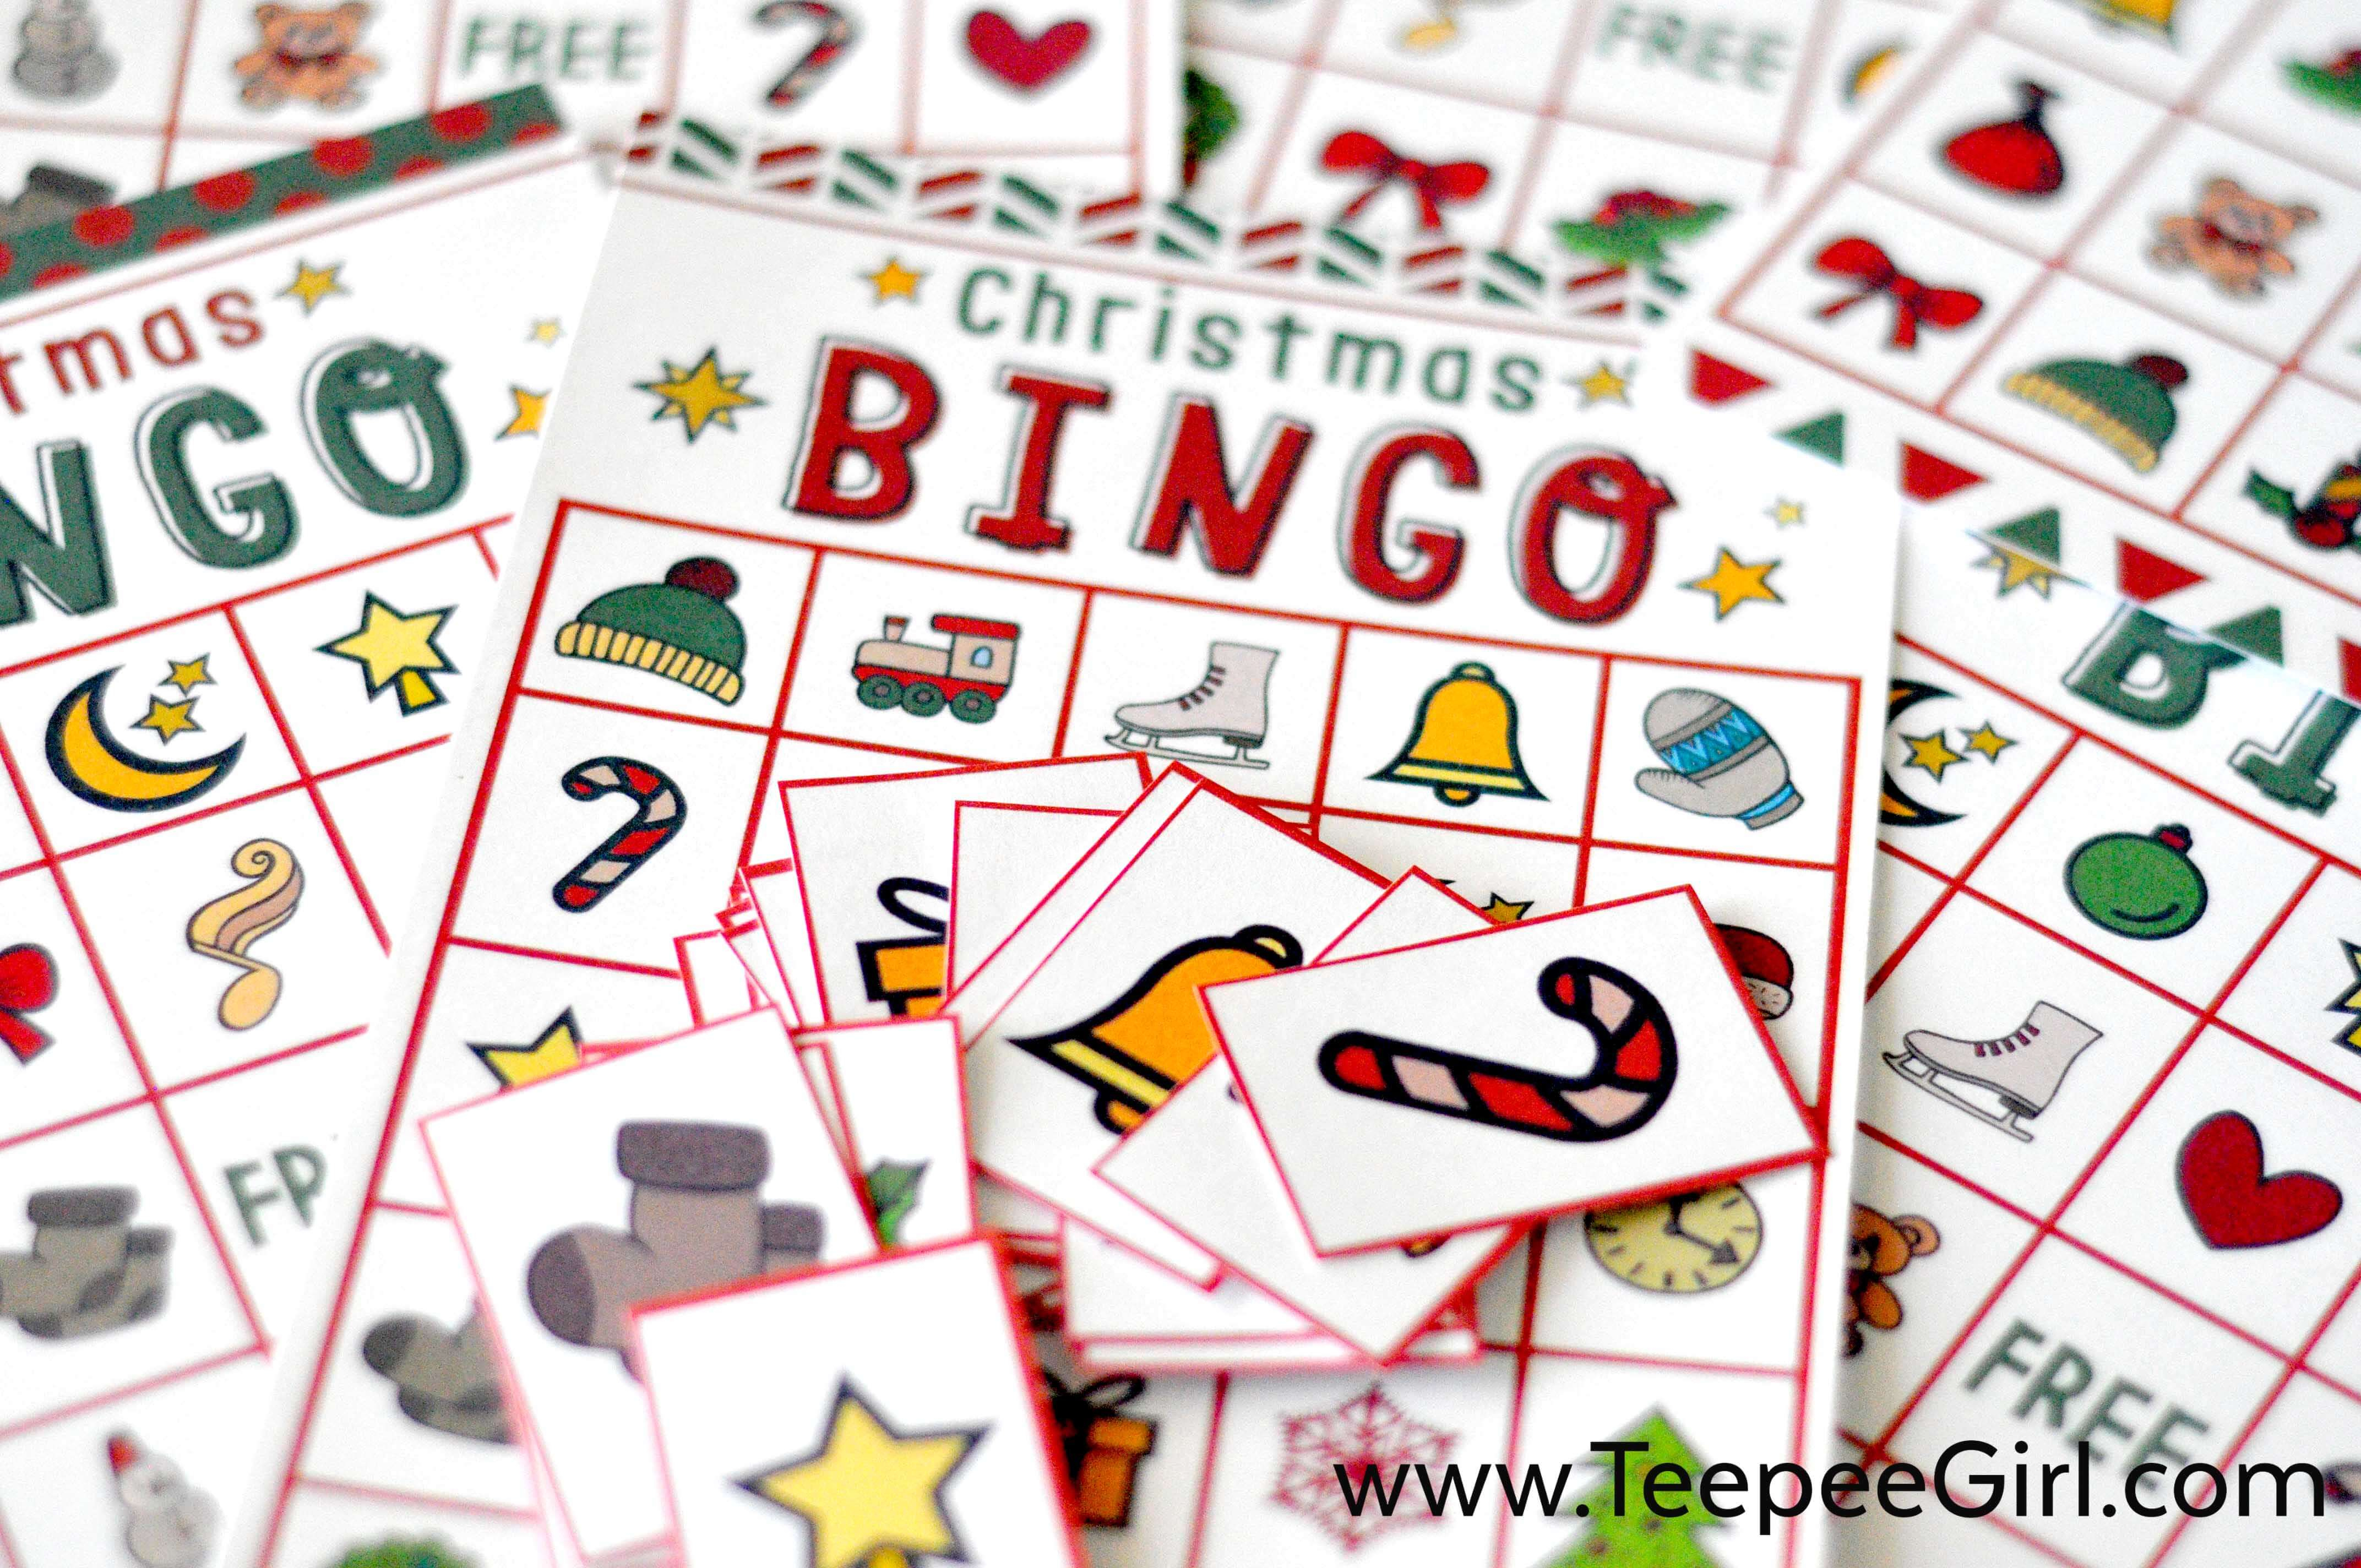 Free Christmas Bingo Game Printable - Free Holiday Games Printable